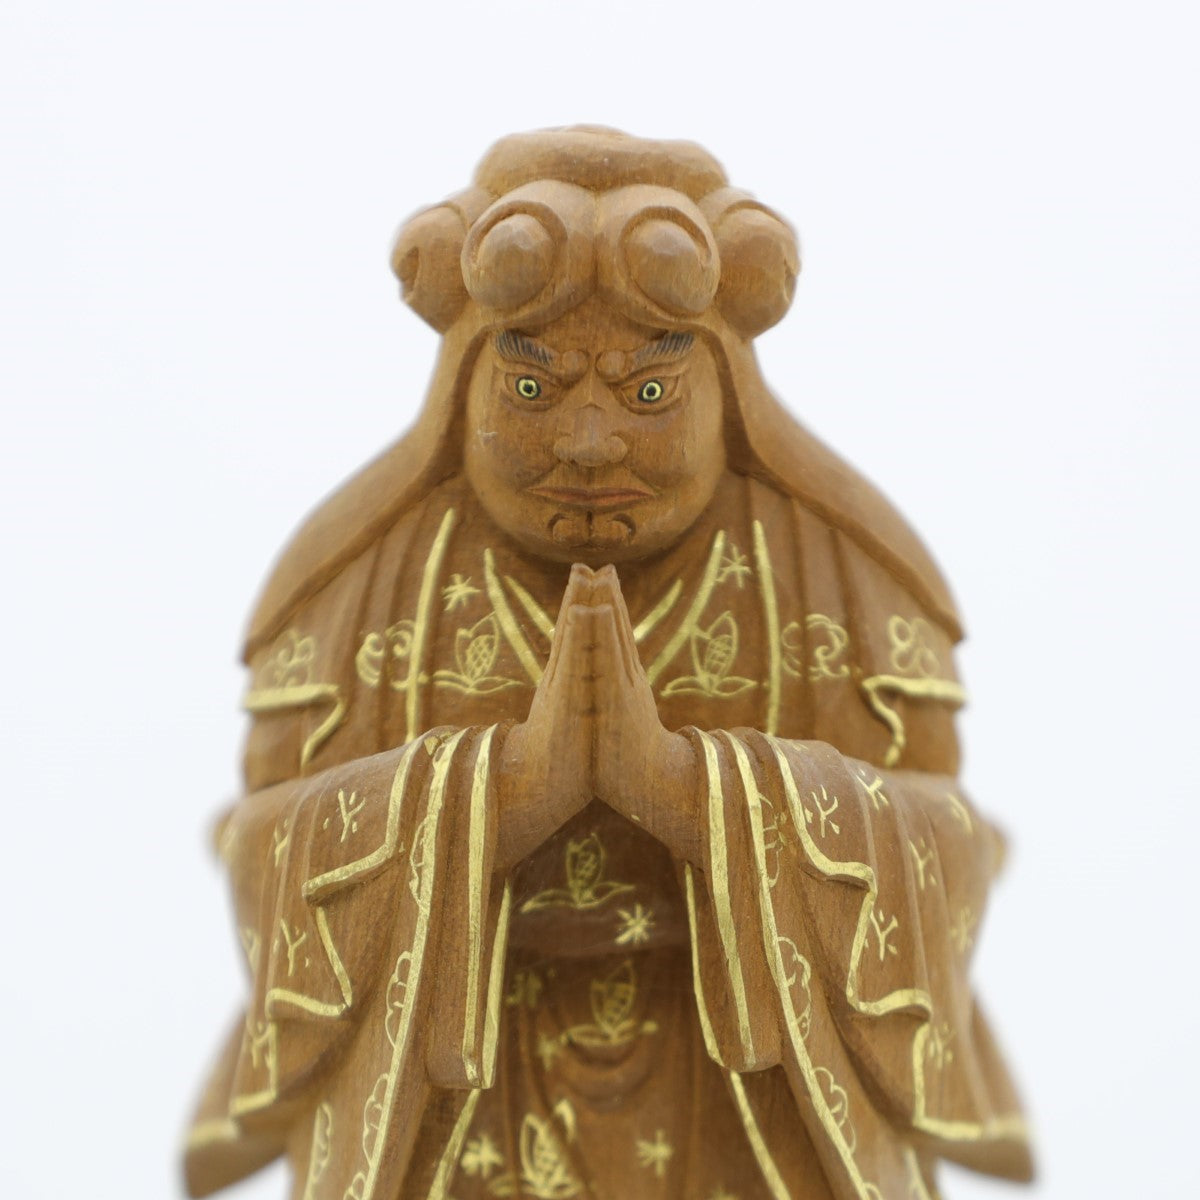 即発送可能 【大野】地蔵菩薩立像 / 木彫仏像 実木彫刻 木の手彫り